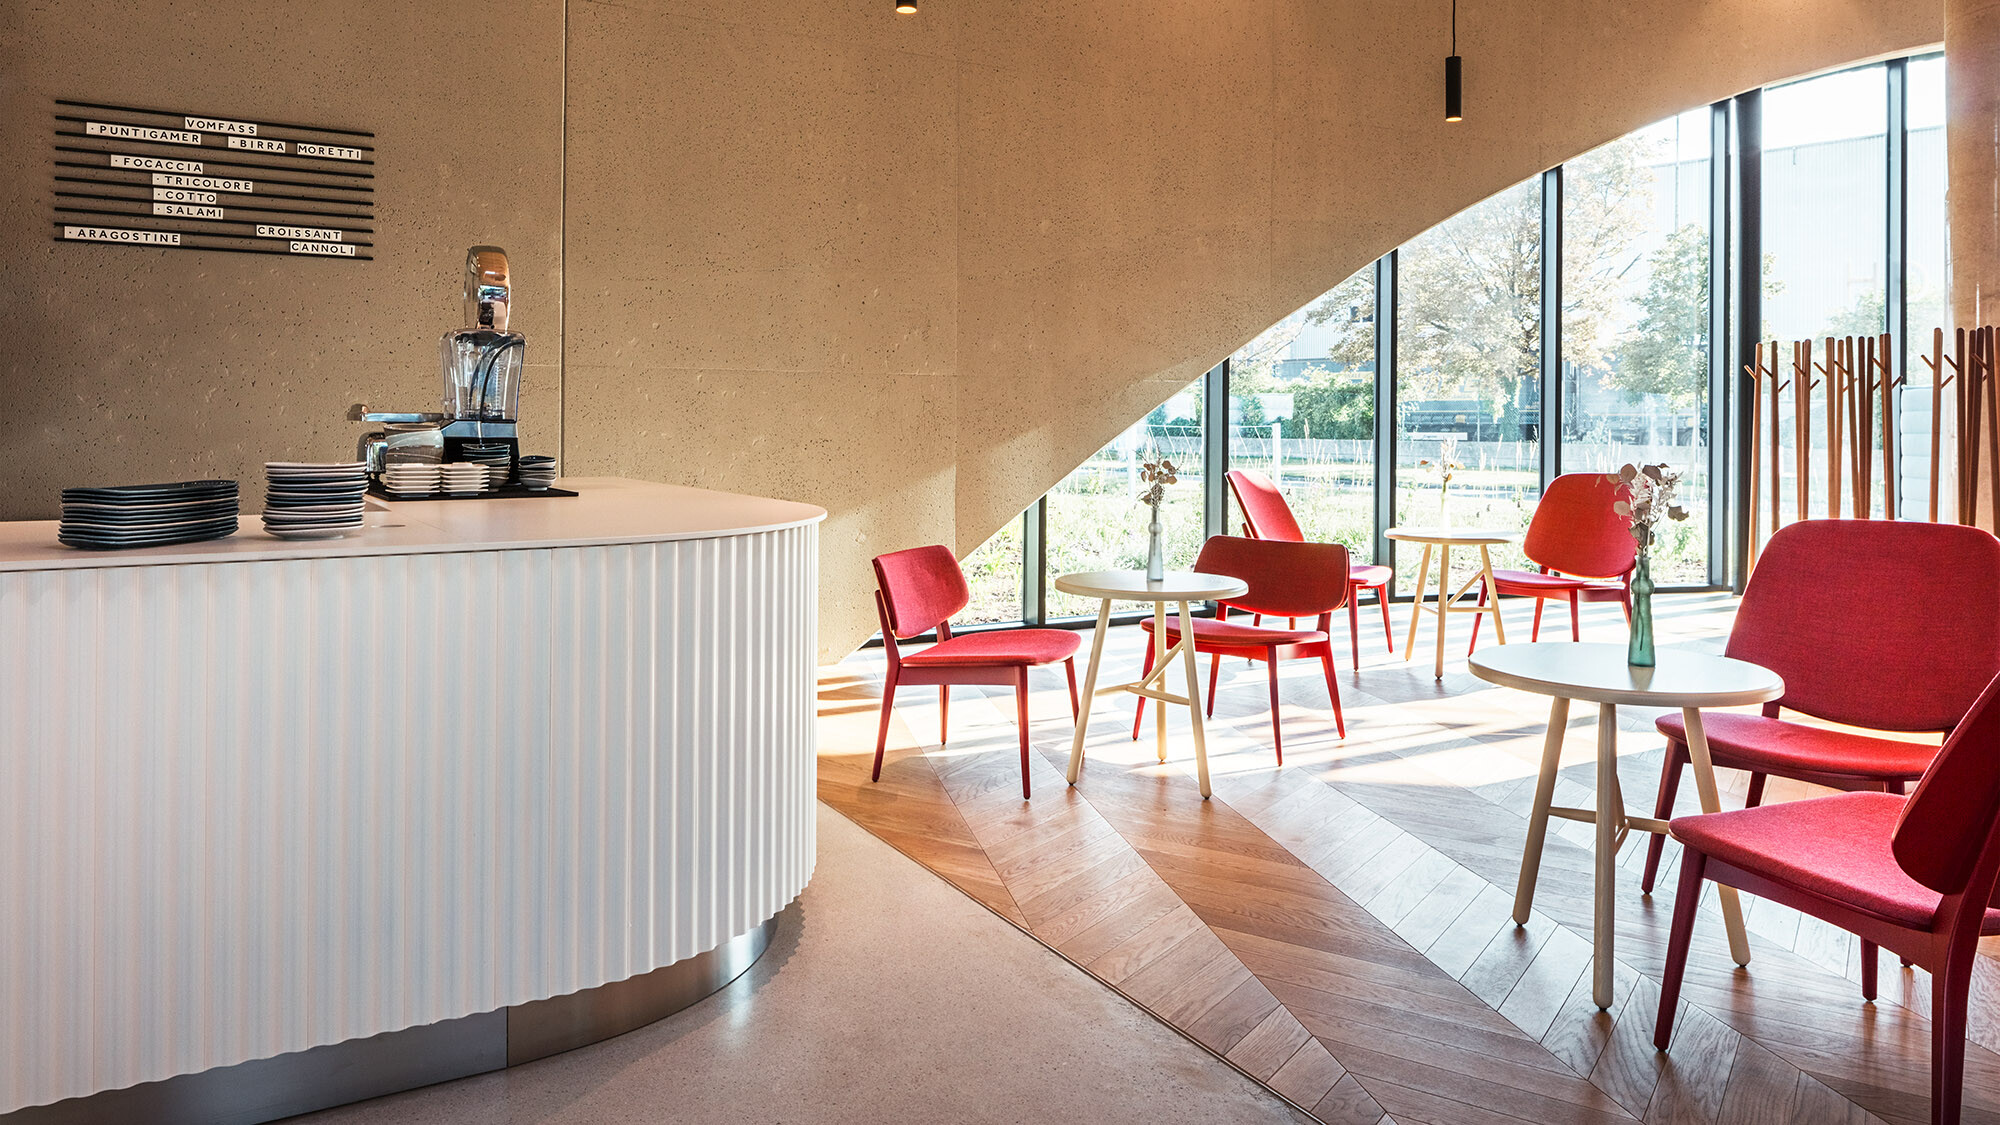 Einer der Räume des Restaurants mit einer Theke, roten Stühlen und einem Parkettboden, dahinter ist eines der Rundbogenfenster zu sehen.